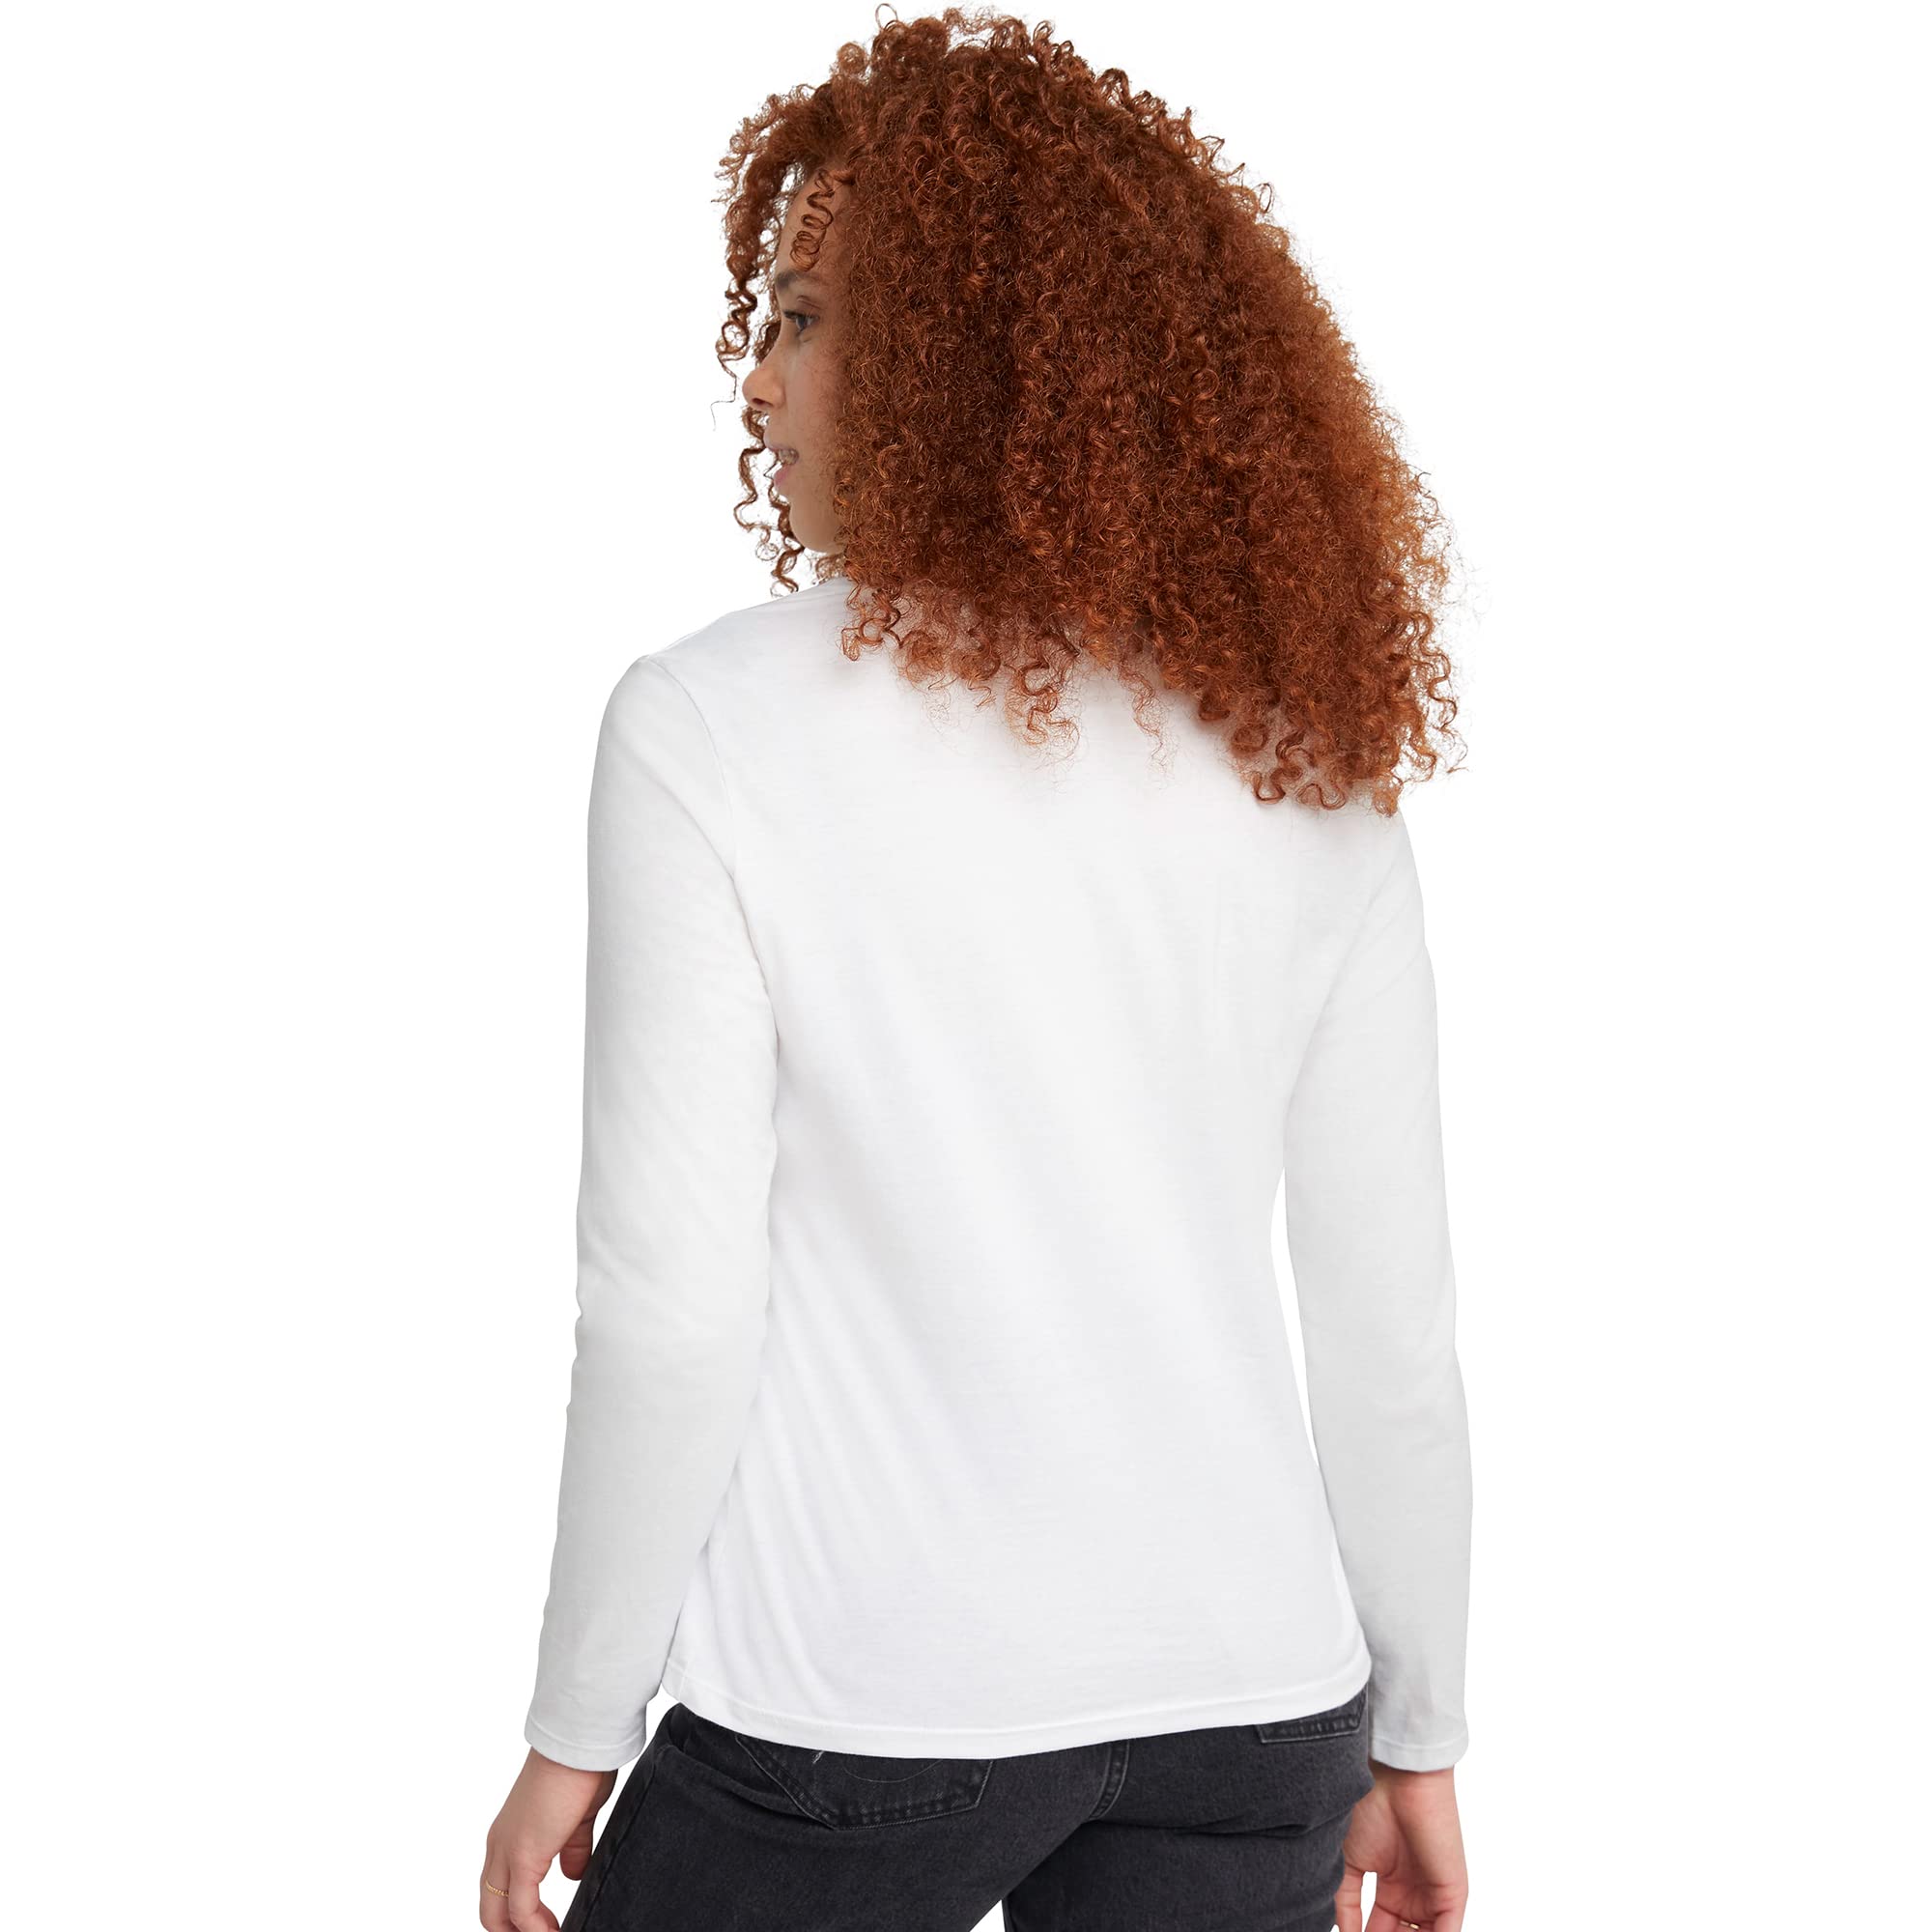 Hanes Women's Originals Long Sleeve Cotton T-Shirt, Lightweight Crewneck Tee, Modern Fit